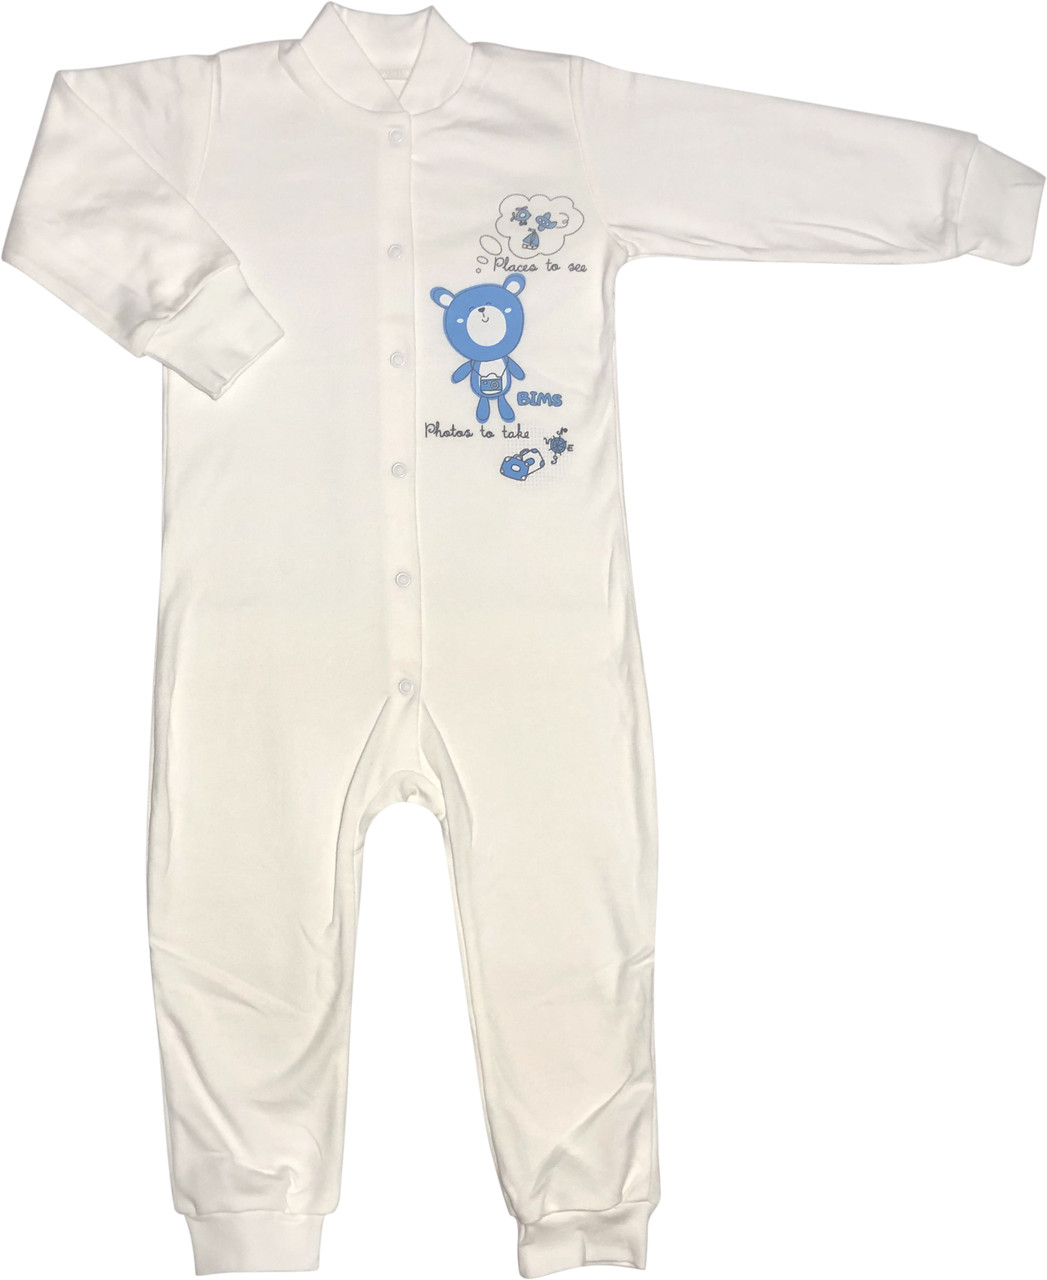 Чоловічок для малюків ріст 98 2-3 року на хлопчика дівчинку сліп з відритими ніжками трикотажний молочний